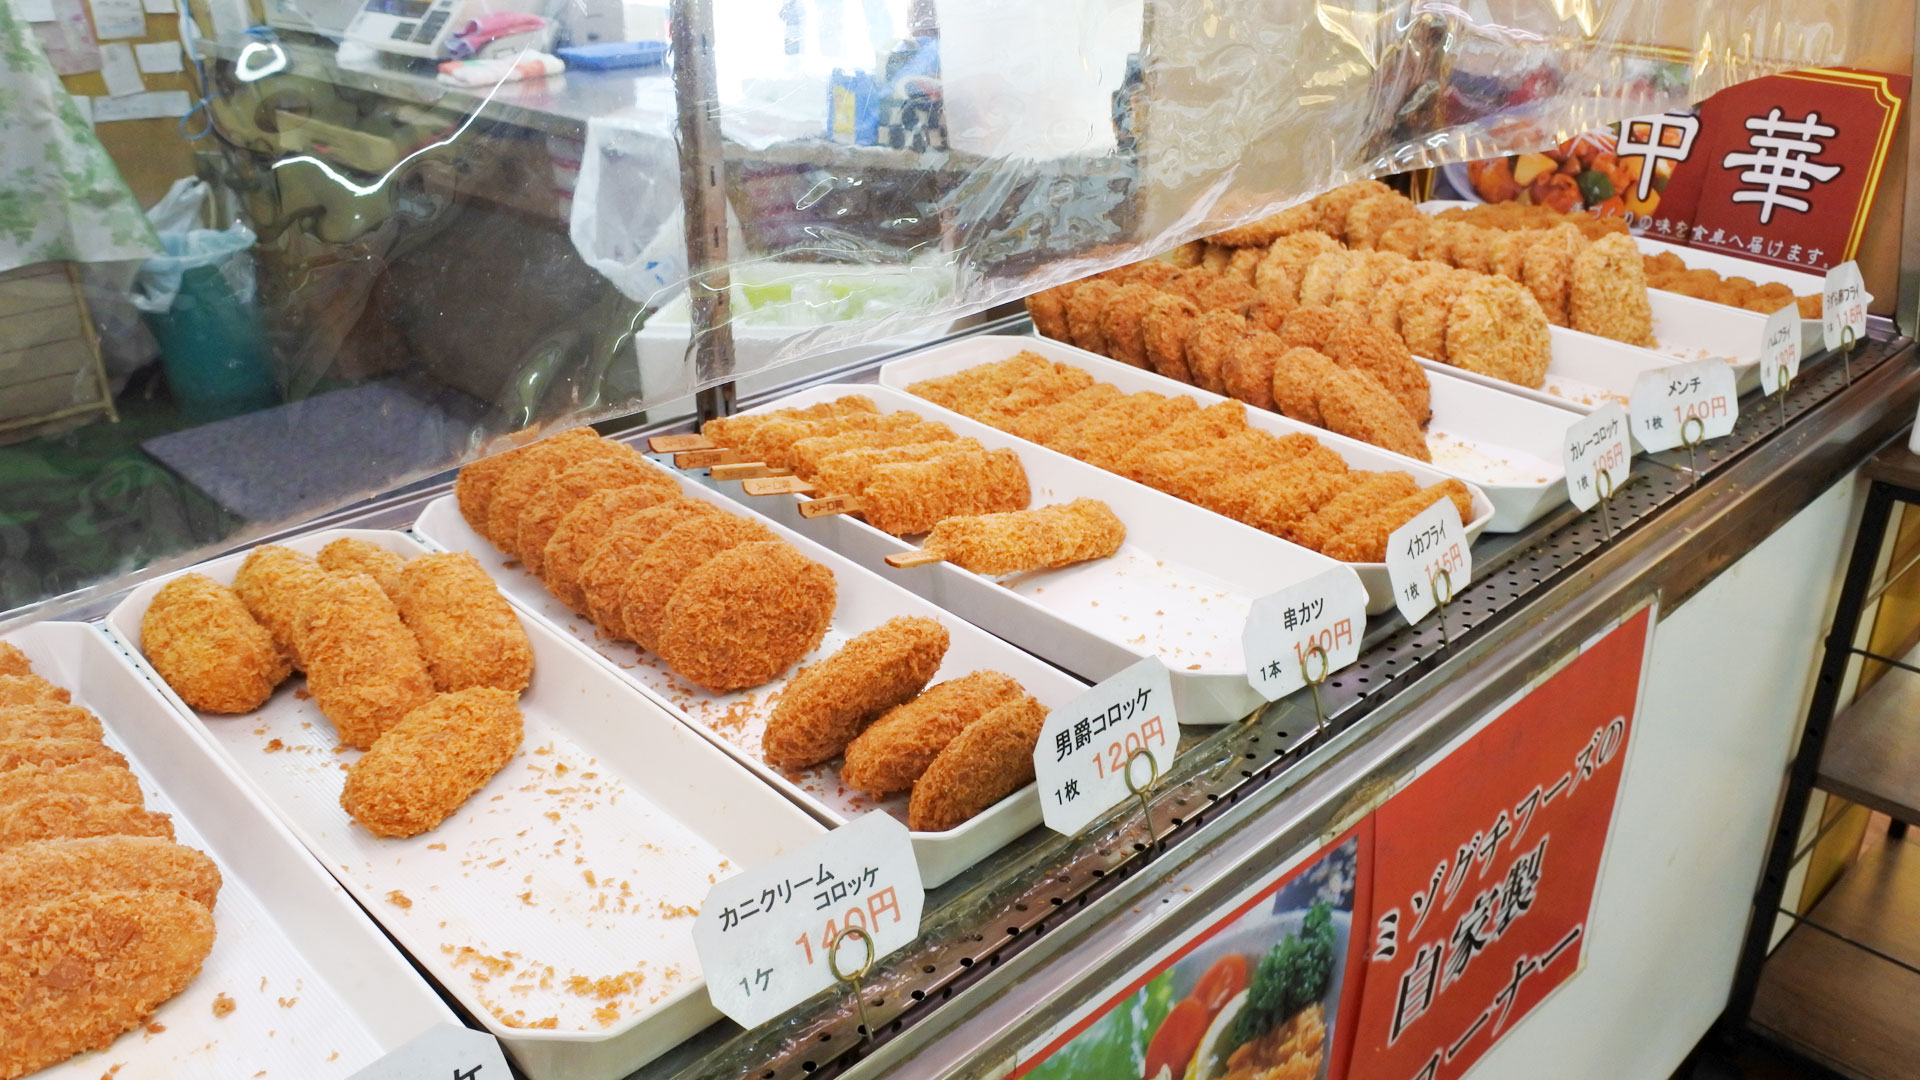 茨城県神栖市波崎の食肉加工卸売会社「ミゾグチフード」は、レストラン「コロッケ」にてリーズナブルでボリューム満点の惣菜、お弁当の製造販売をおこなっております。